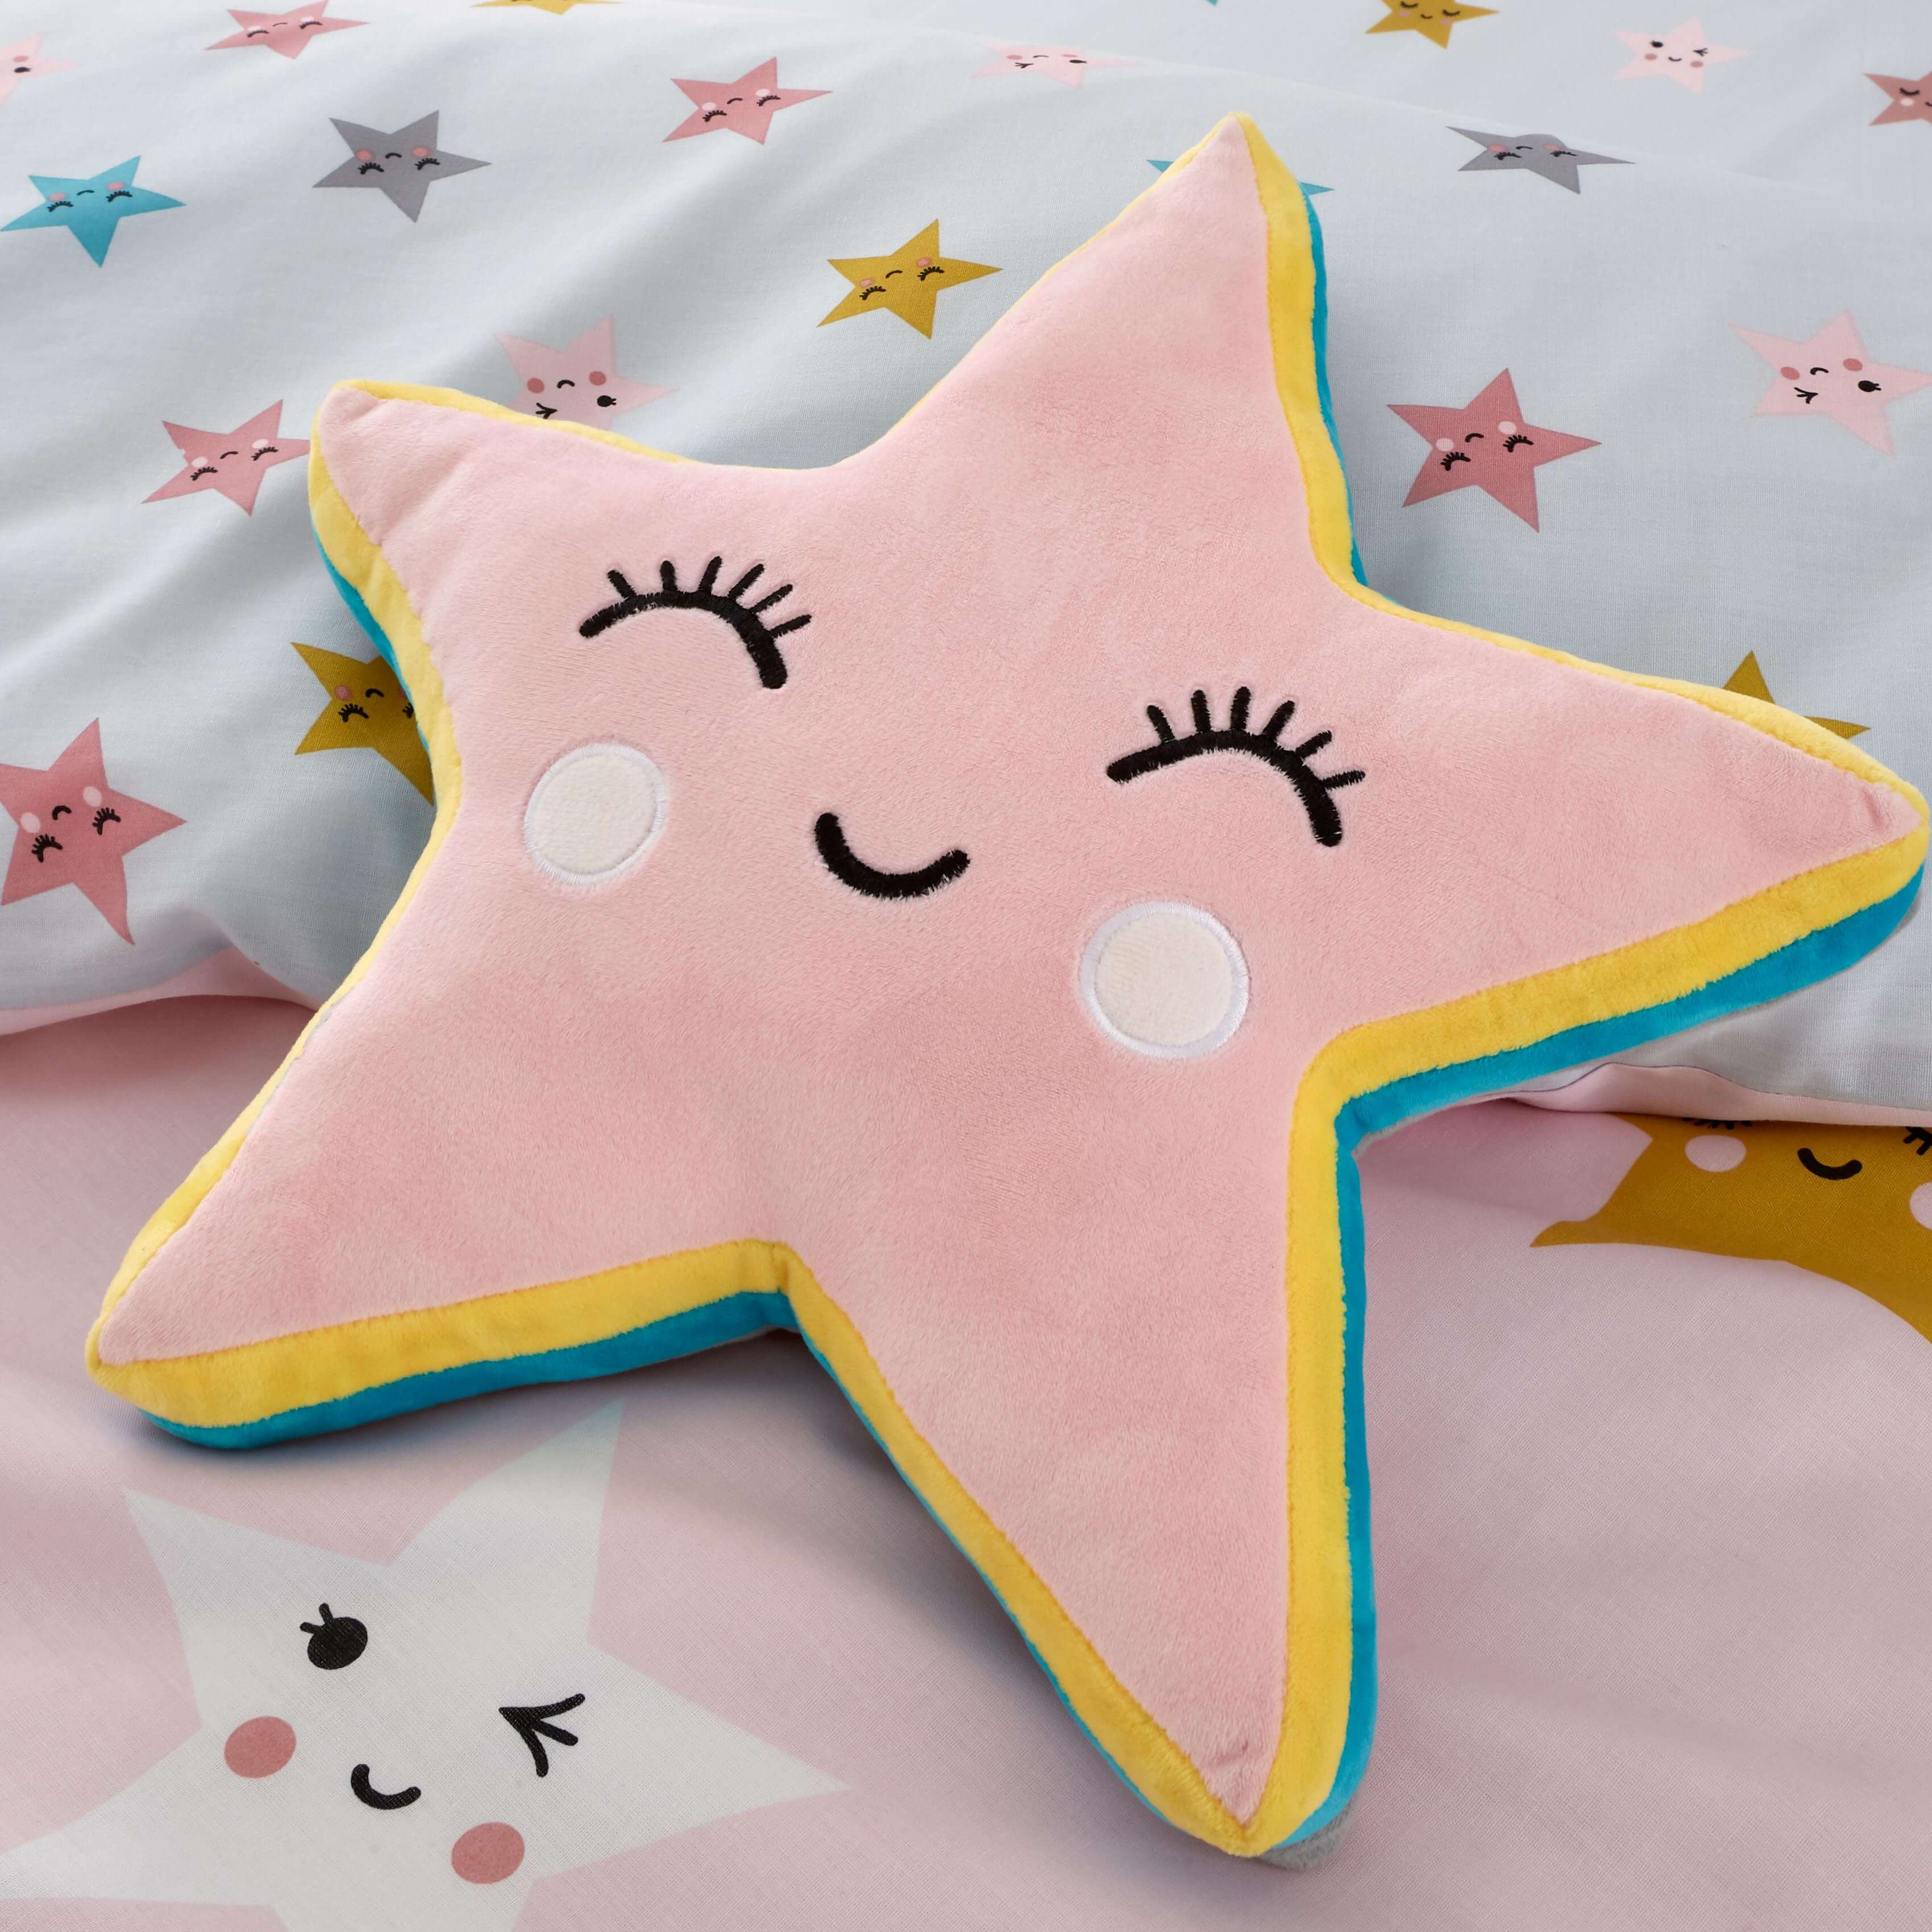 Cuddly Cushion Happy Stars